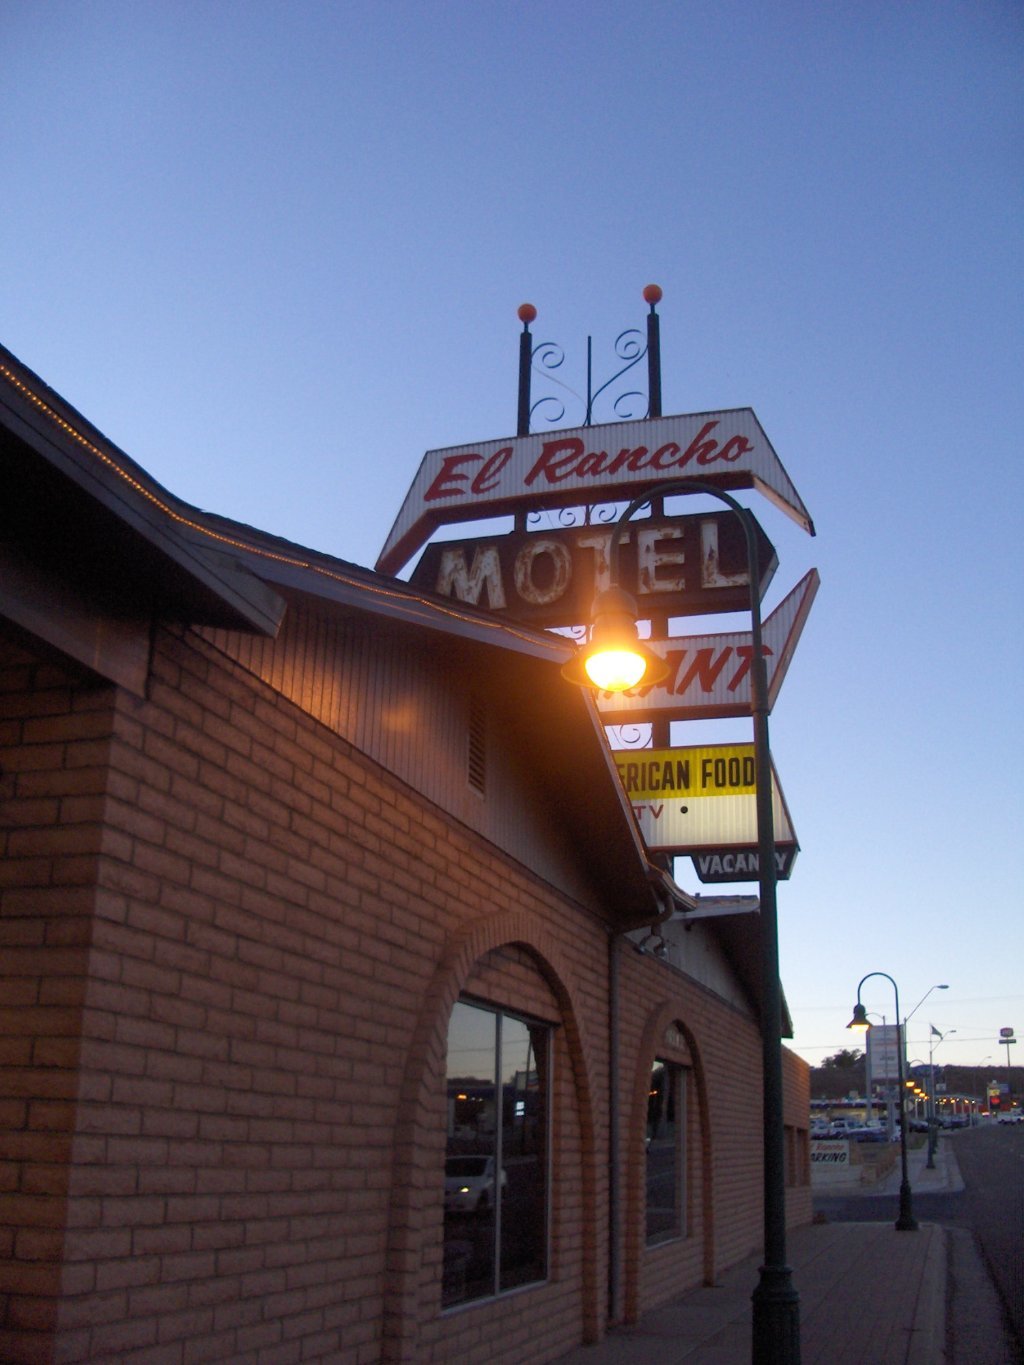 El Rancho Restaurant & Motel